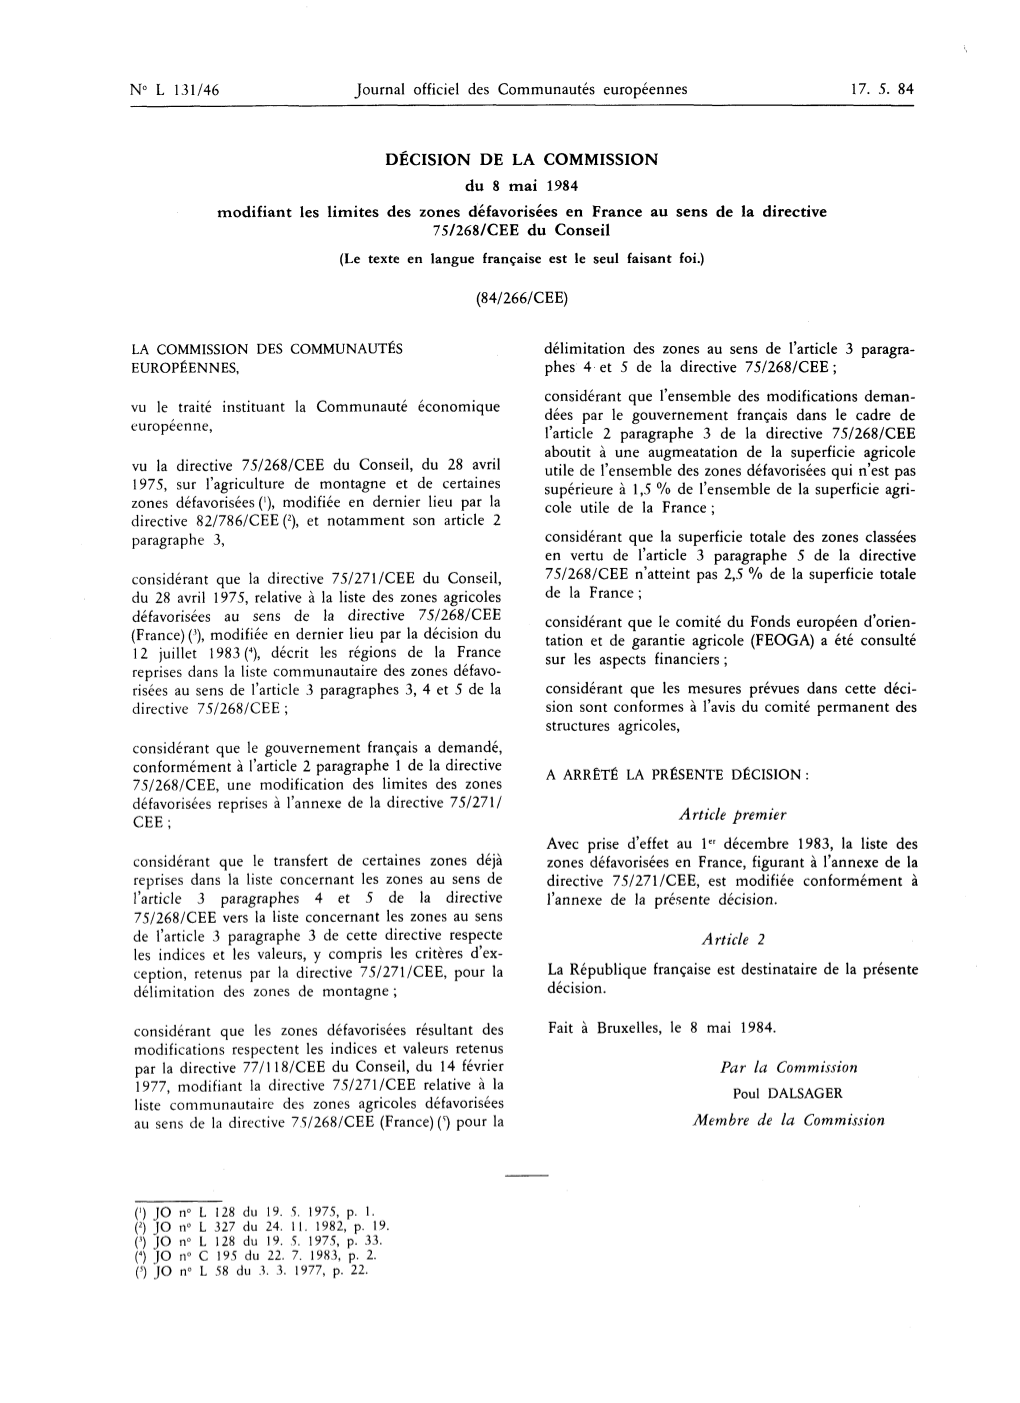 Par La Directive 77/118/CEE Du Conseil, Du 14 Février